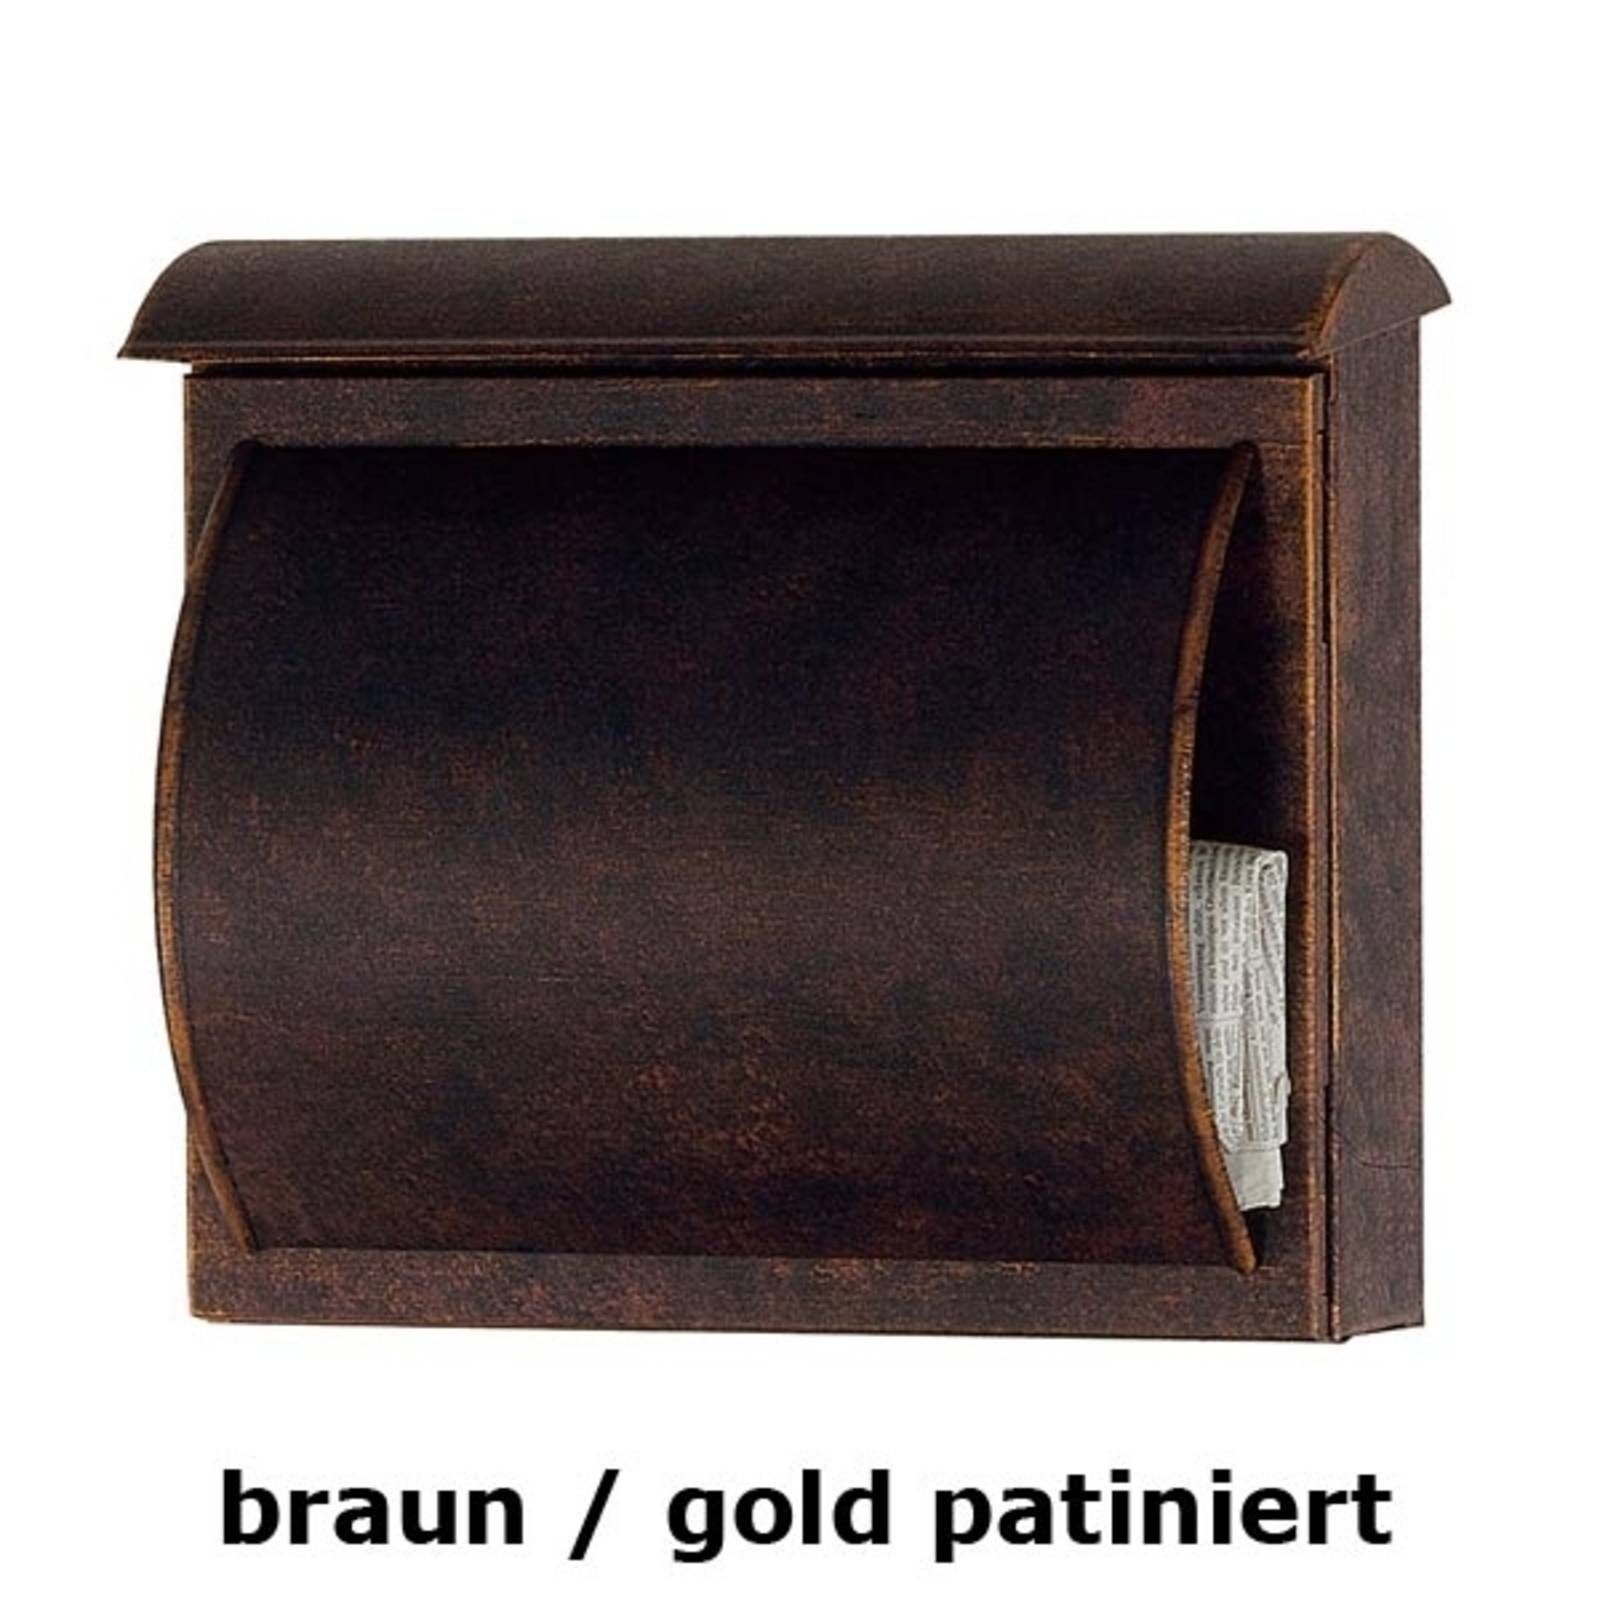 Heibi Briefkasten TORES braun / gold patiniert